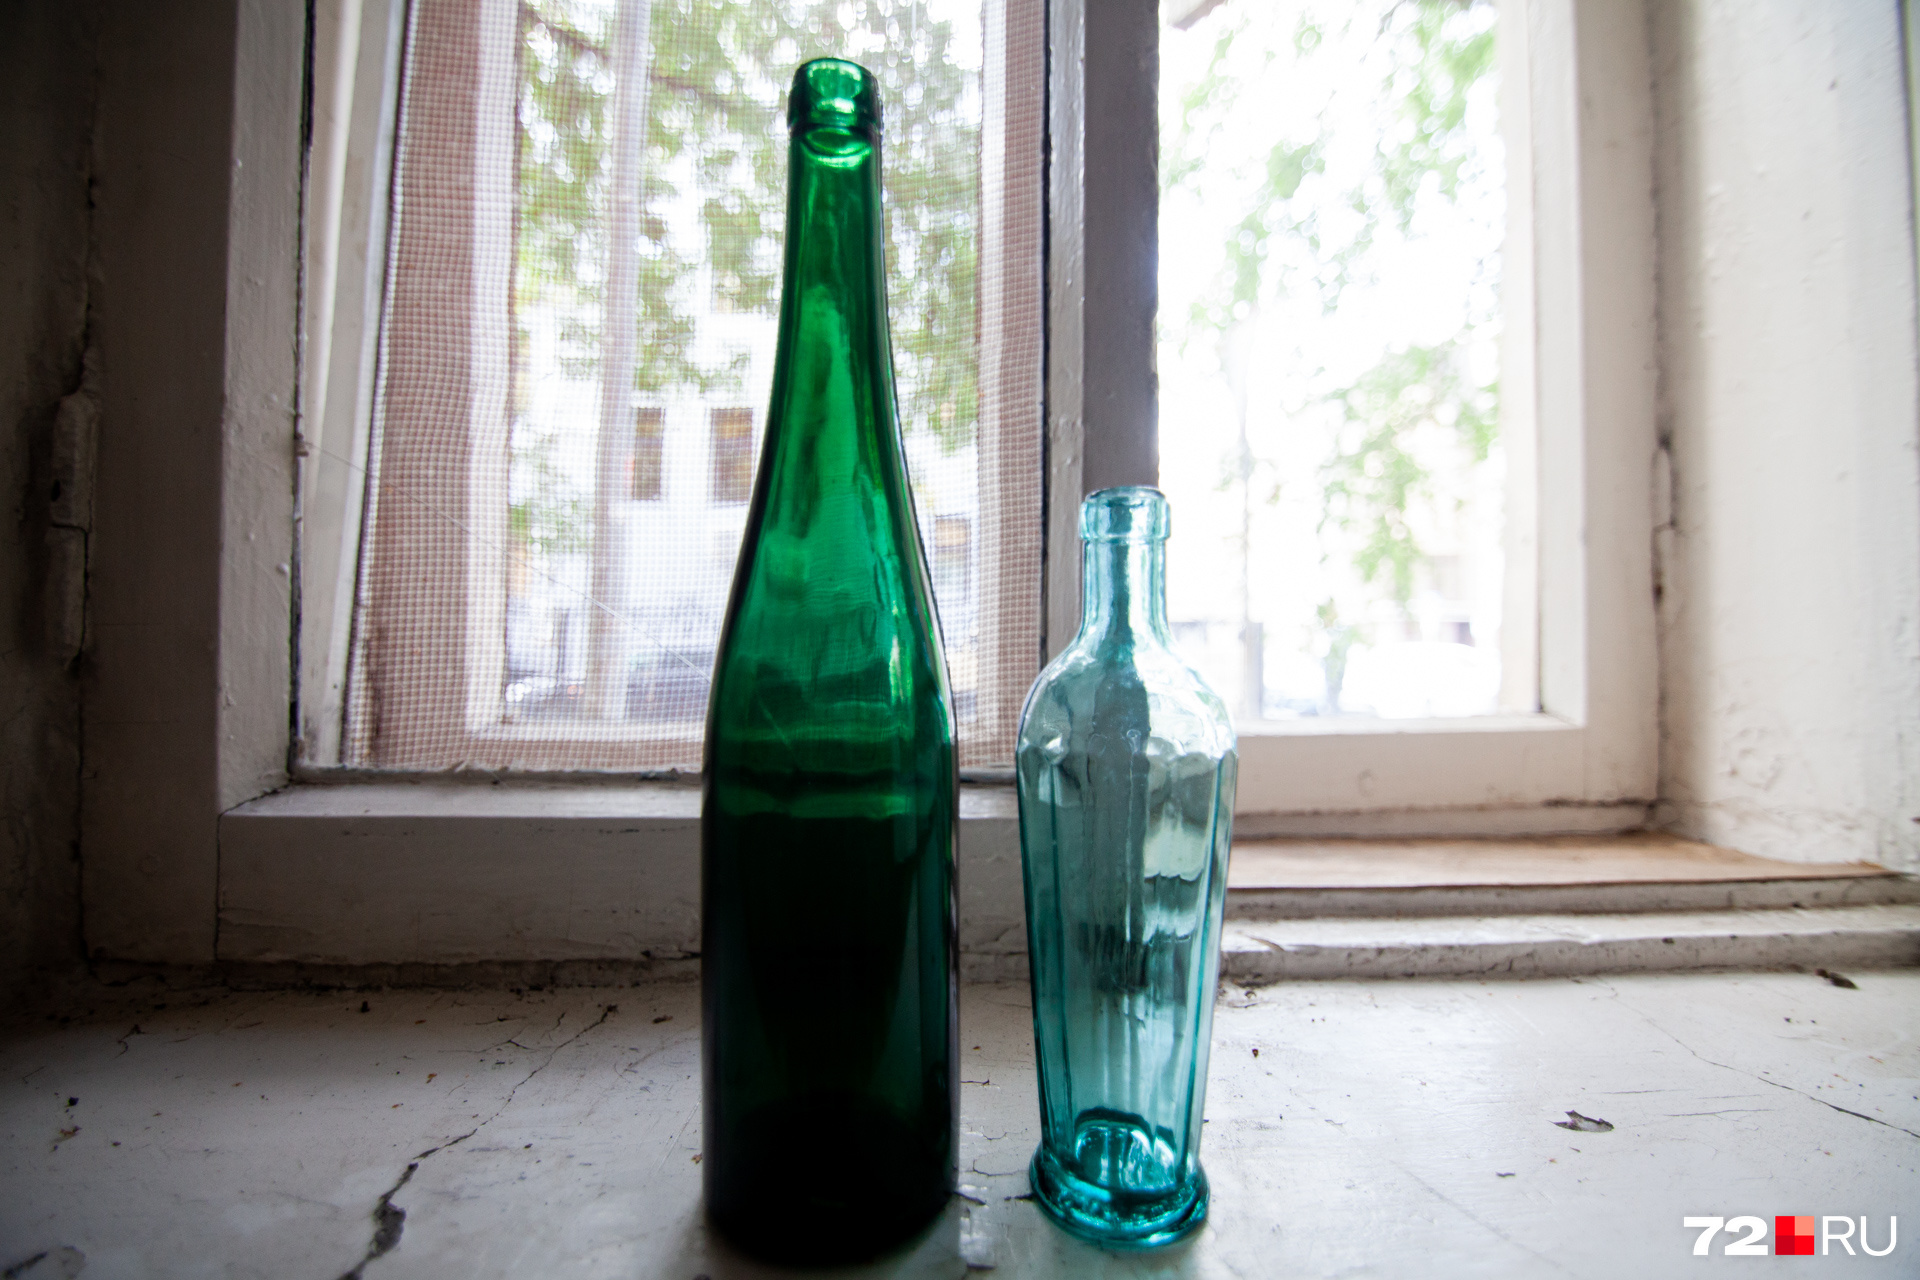 Найденные под полом бутылки. Возможно, их спрятала семья Станислава Карнацевича